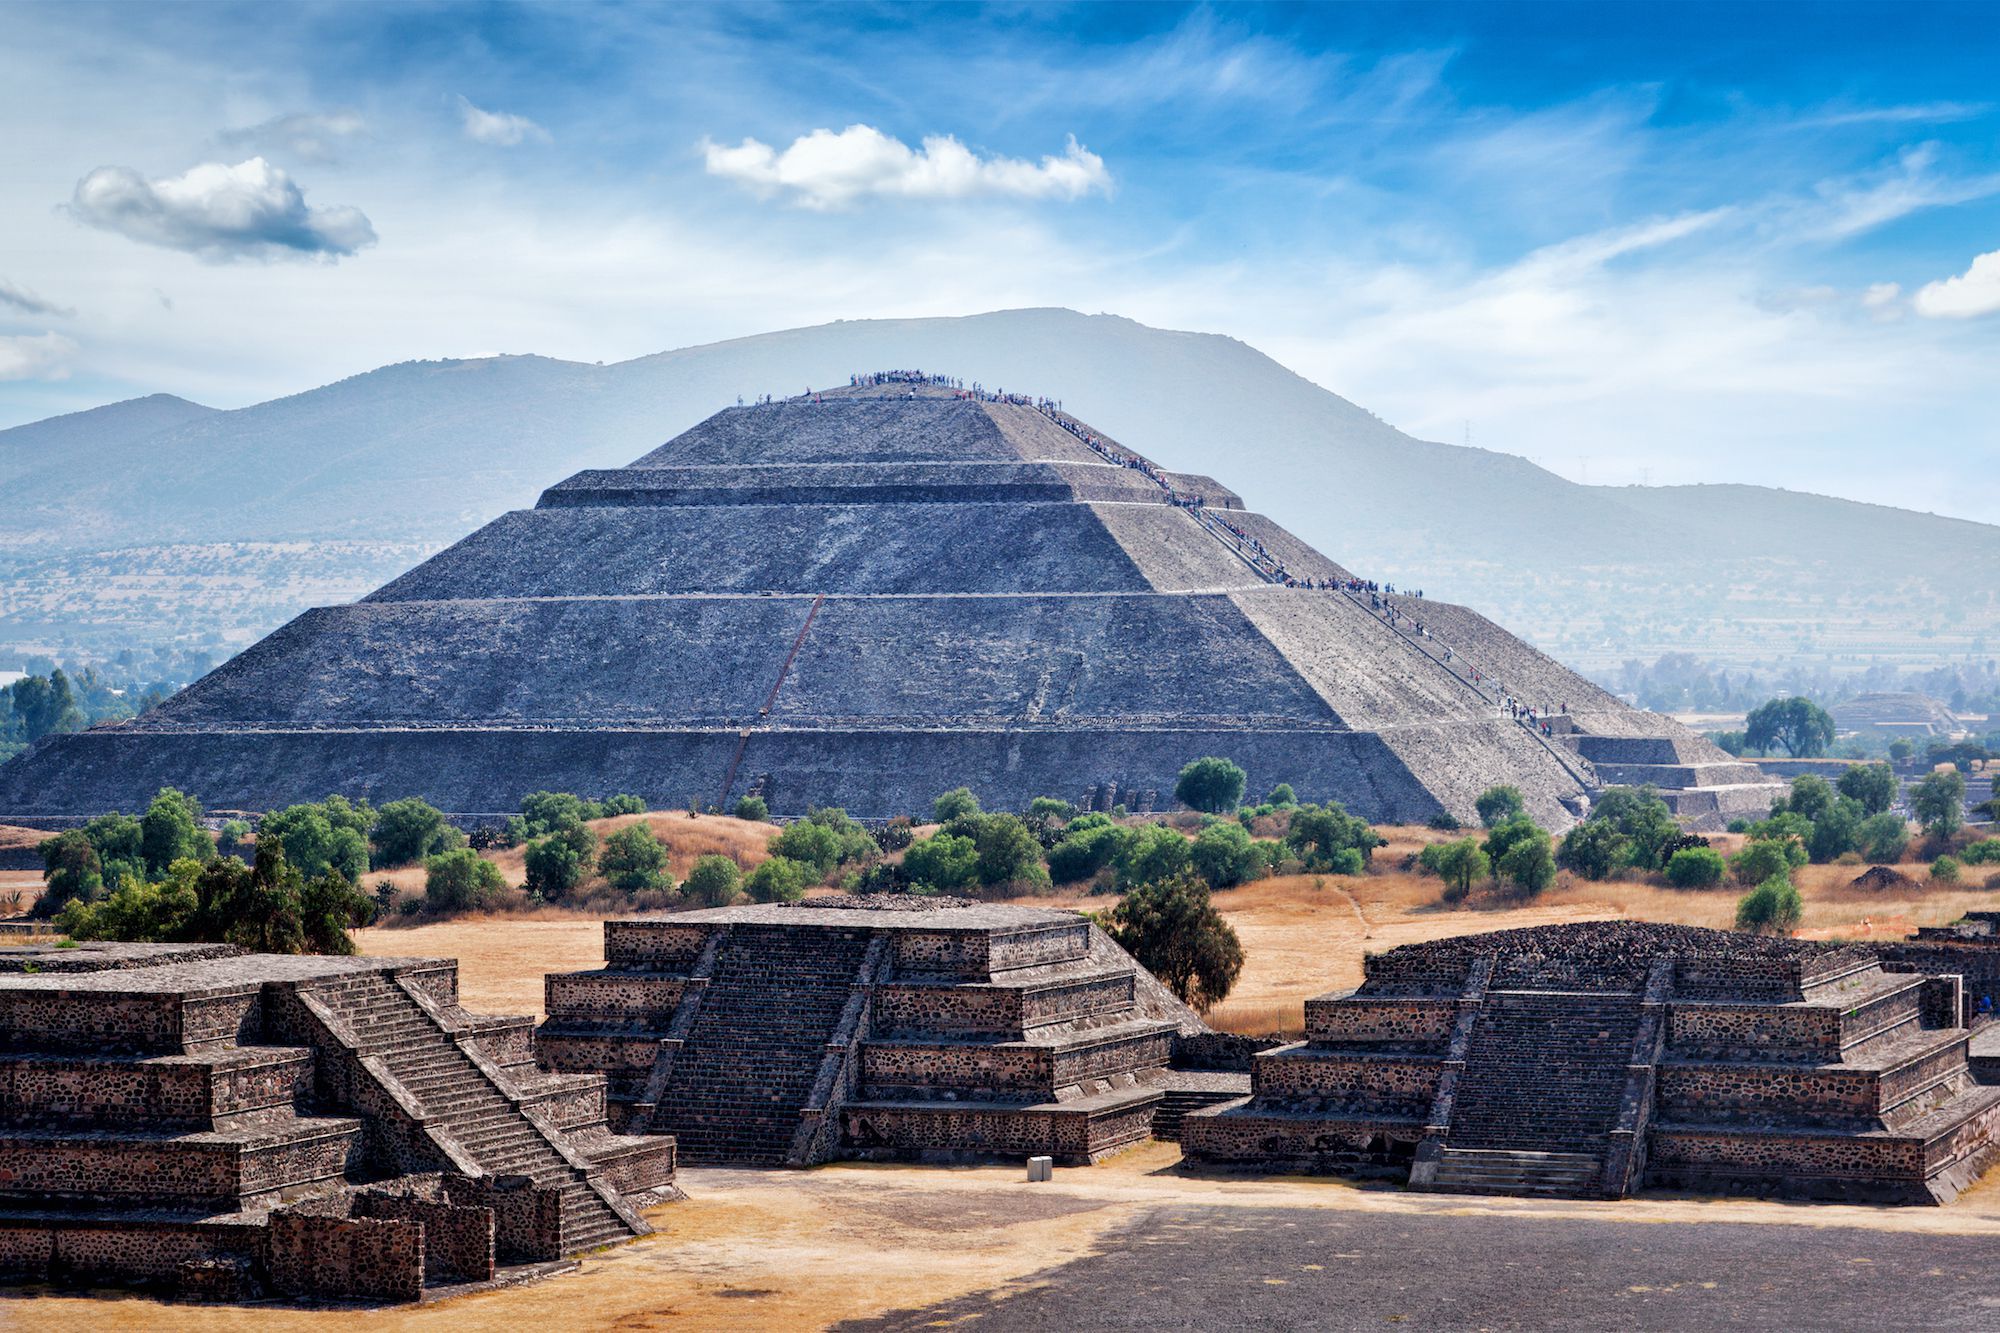 حضارة الأزتك - كيف تطورت وتنتهت حضارة الأزتك شمال المكسيك وأمريكا الوسطى - آخر حضارة محلية عظيمة في أمريكا الوسطى - لغة الناواتل